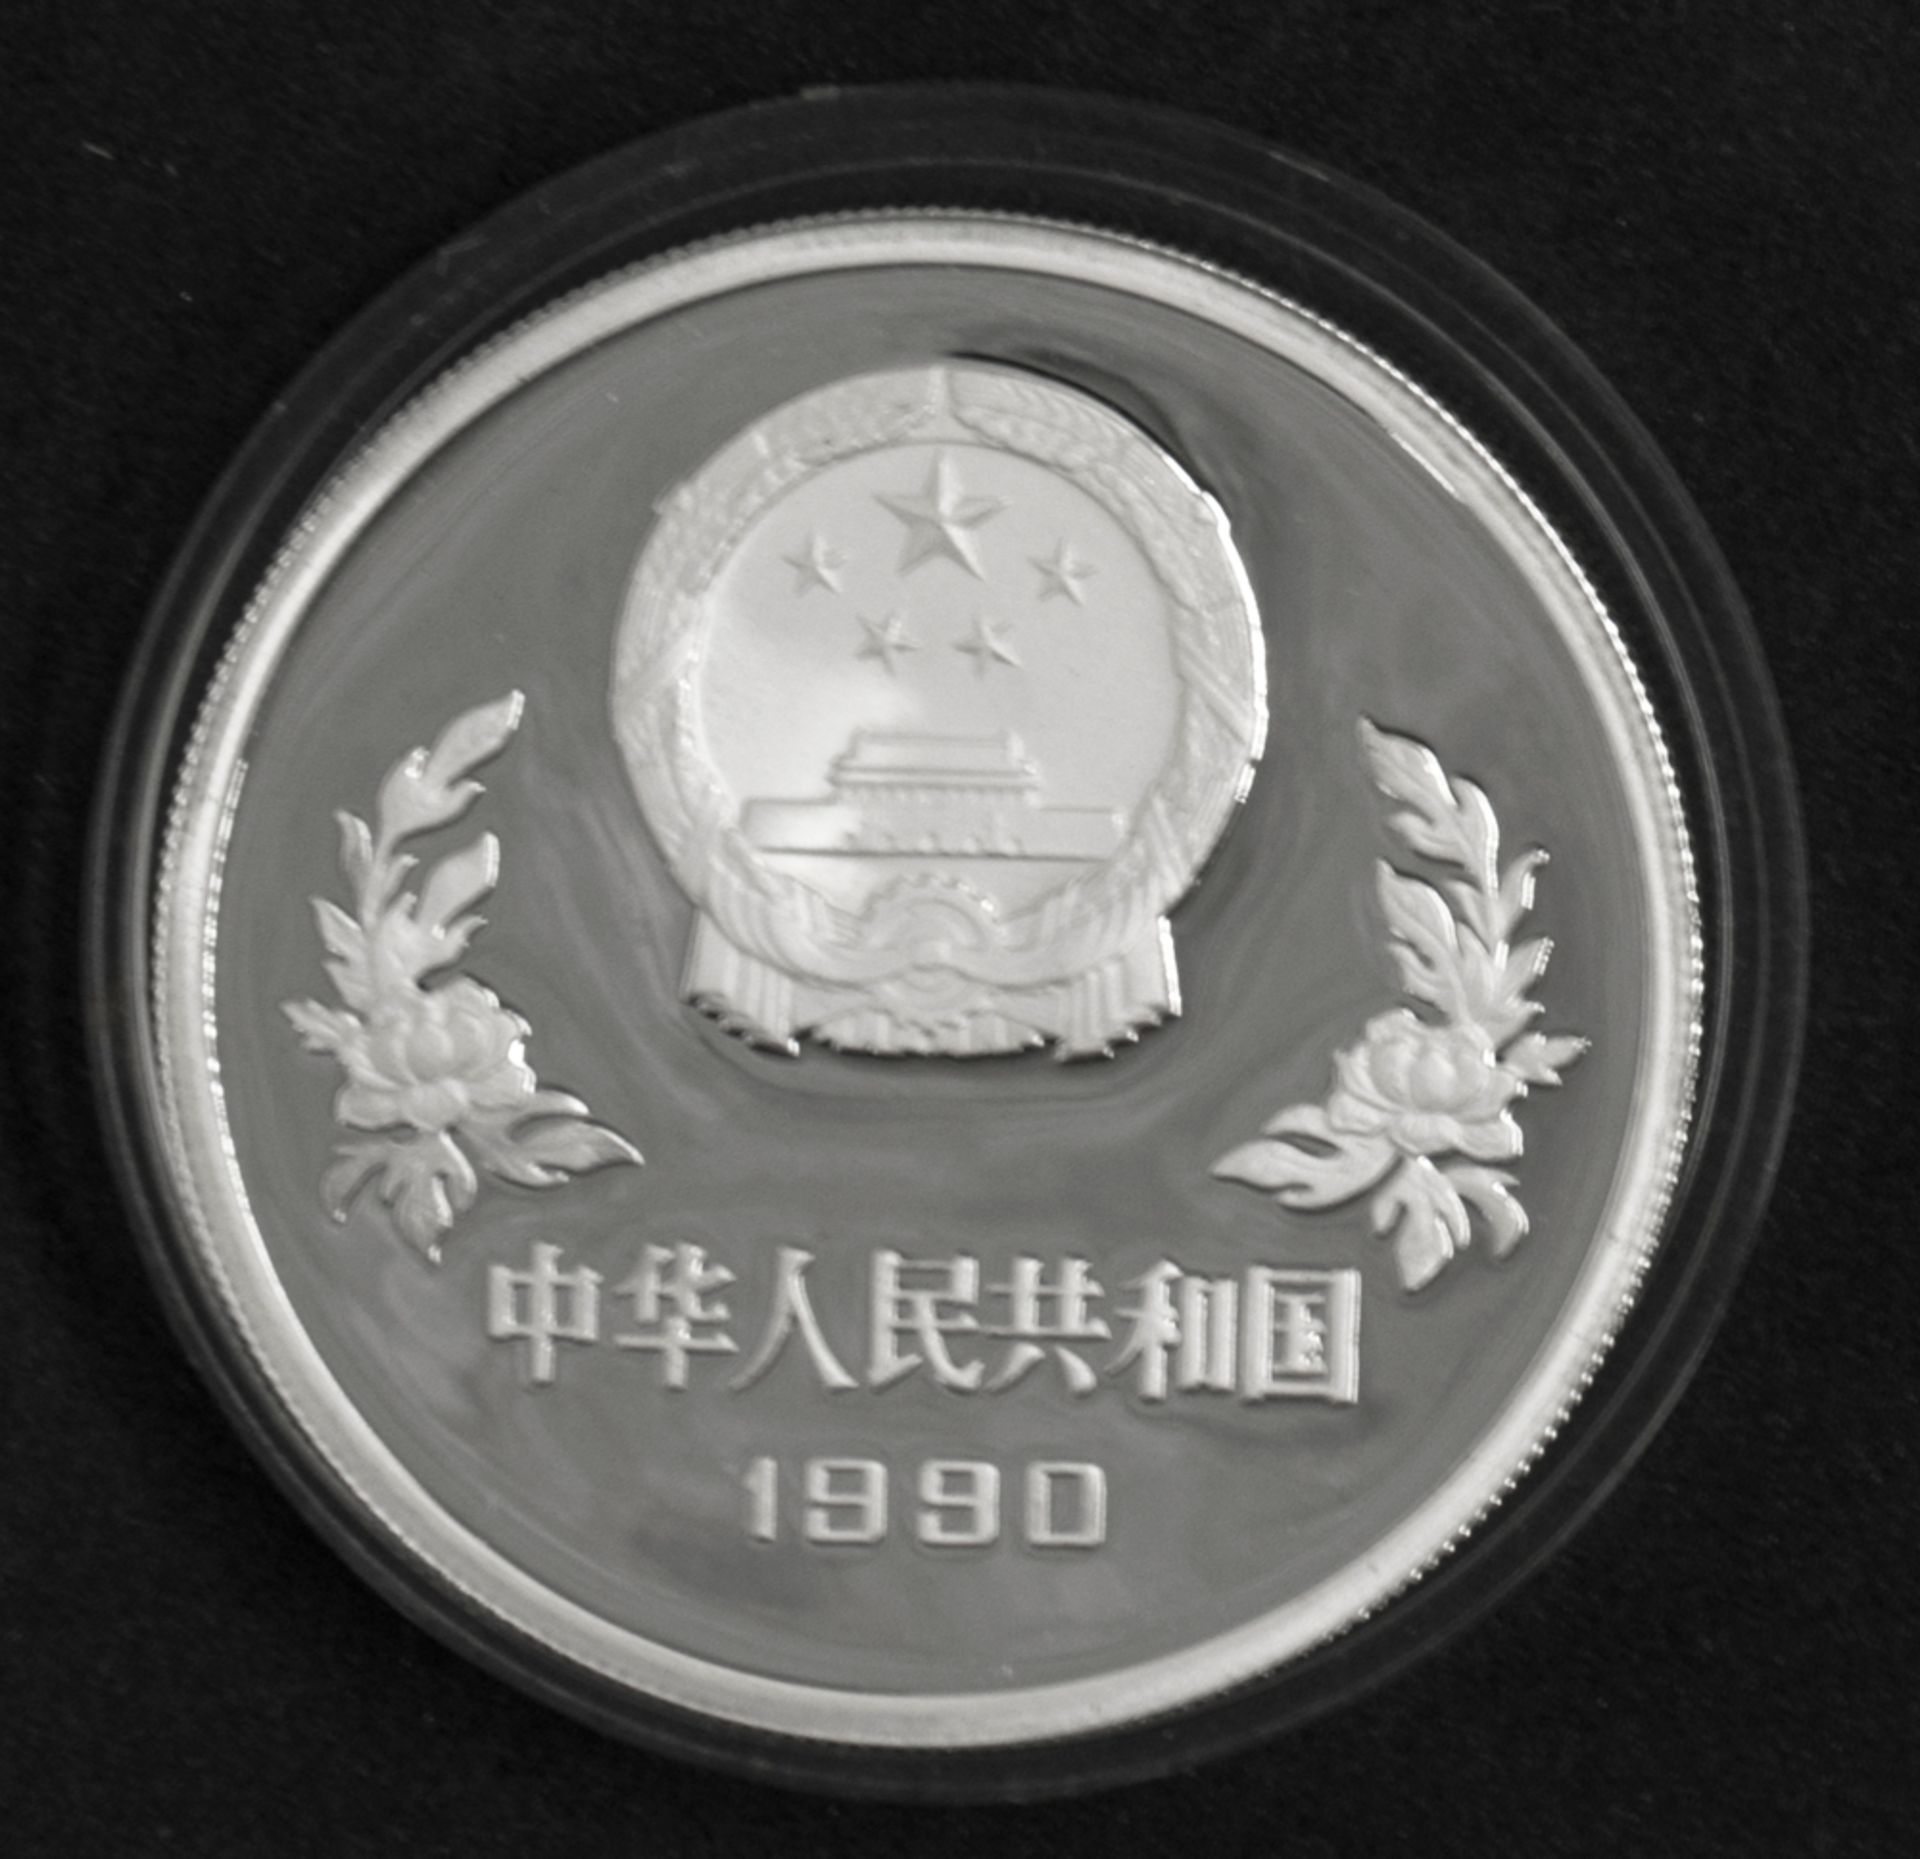 China 1990, 5 Yuan - Silbermünze "Fußball WM 1990". Durchmesser: ca. 39 mm. Gewicht: ca. 27,2 g. - Bild 2 aus 2